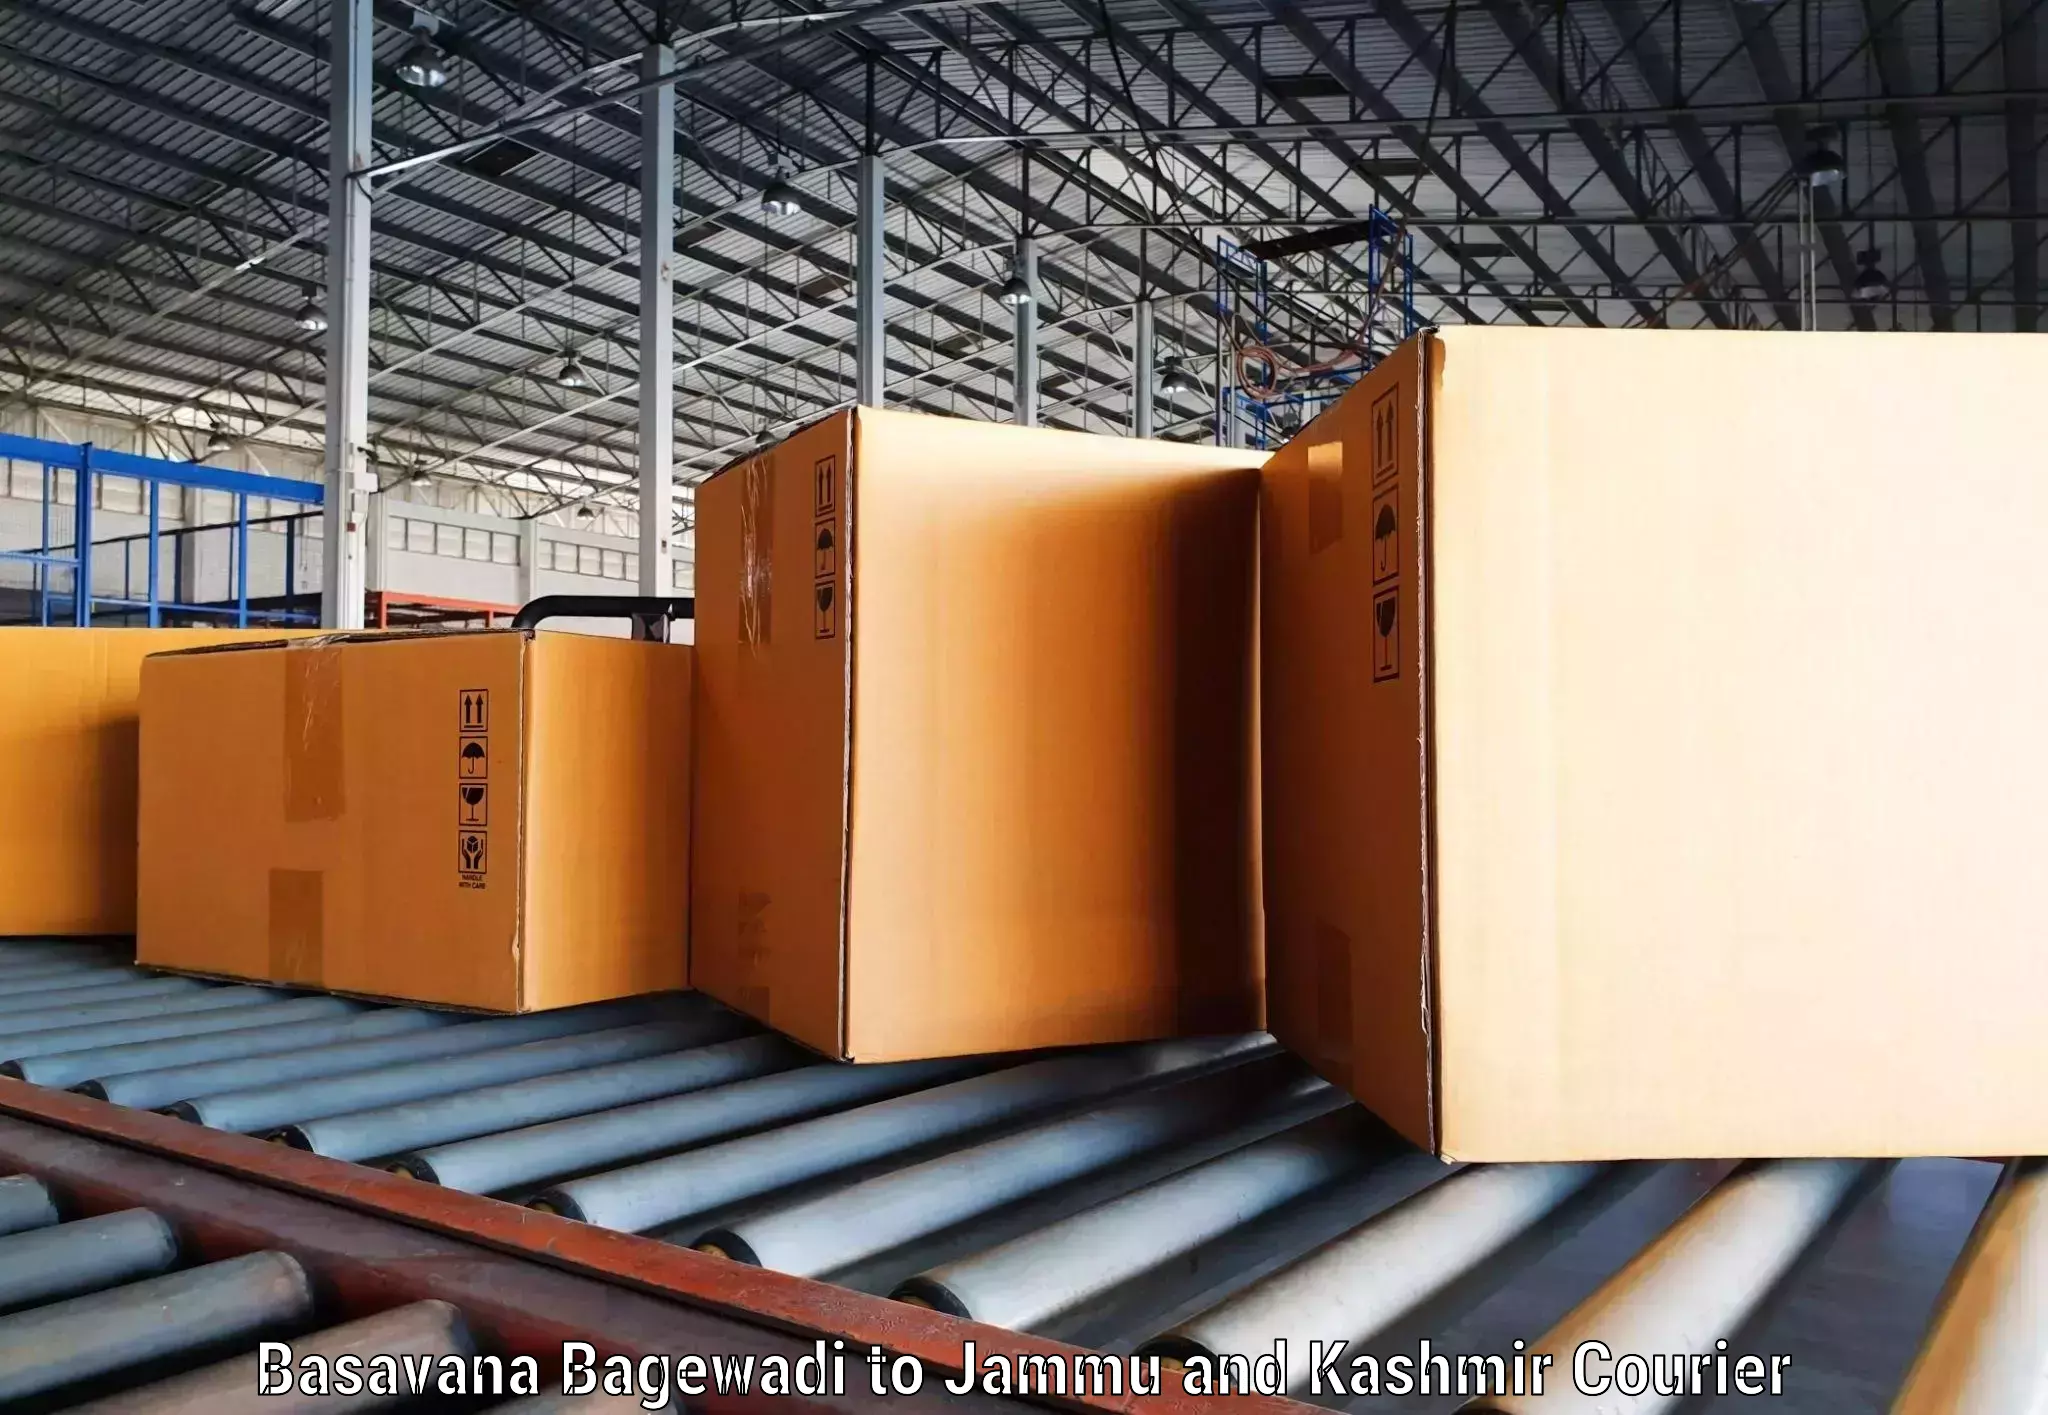 Package delivery network Basavana Bagewadi to Kishtwar